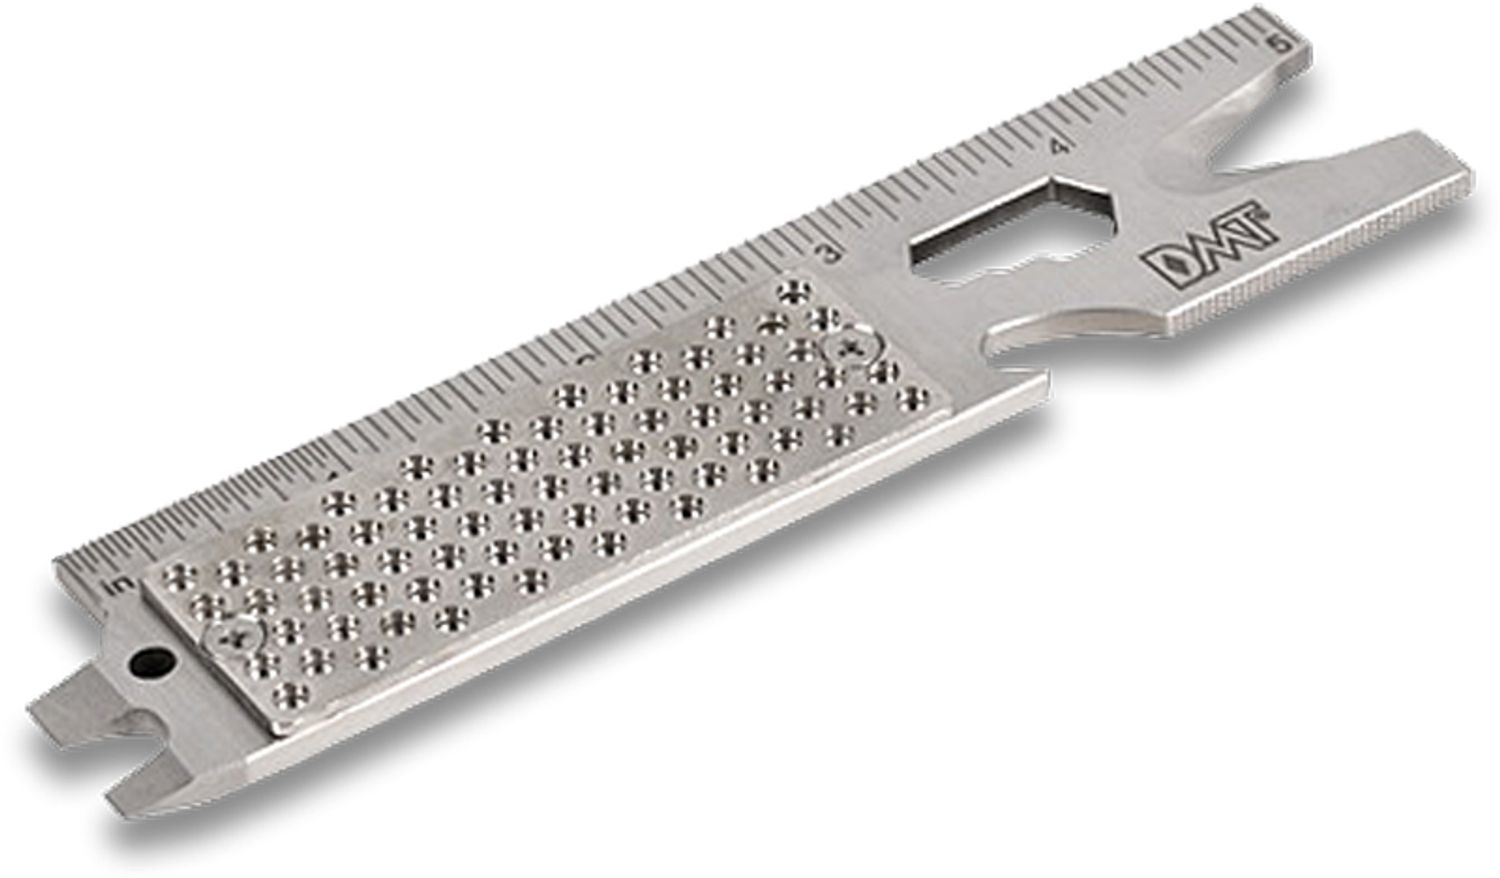 DMT EDC-Sharp Compact Diamond Knife Sharpener 9 Function Multi Tool 20006